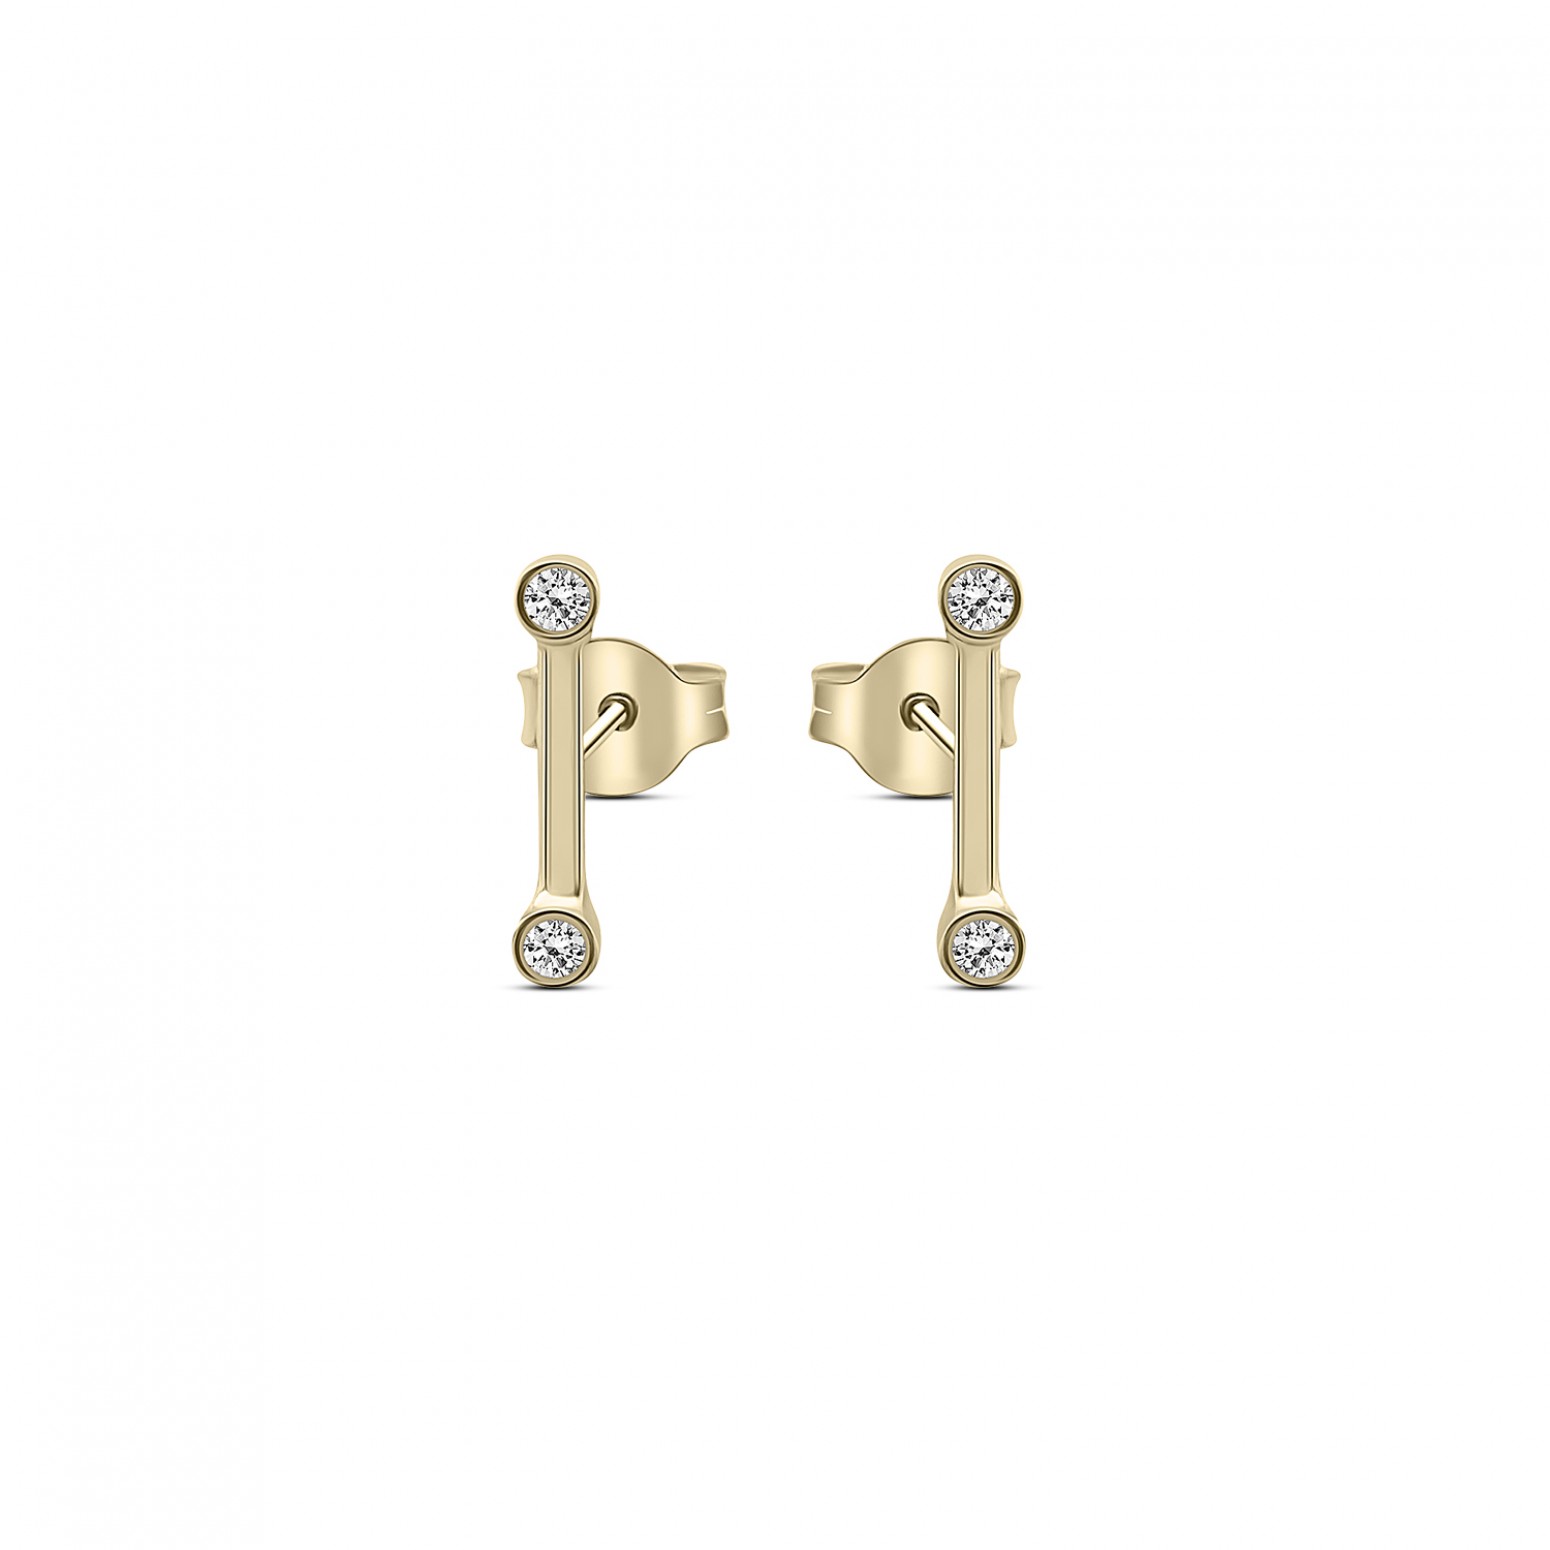 Earrings K9 gold with zircon, sk4141 EARRINGS Κοσμηματα - chrilia.gr